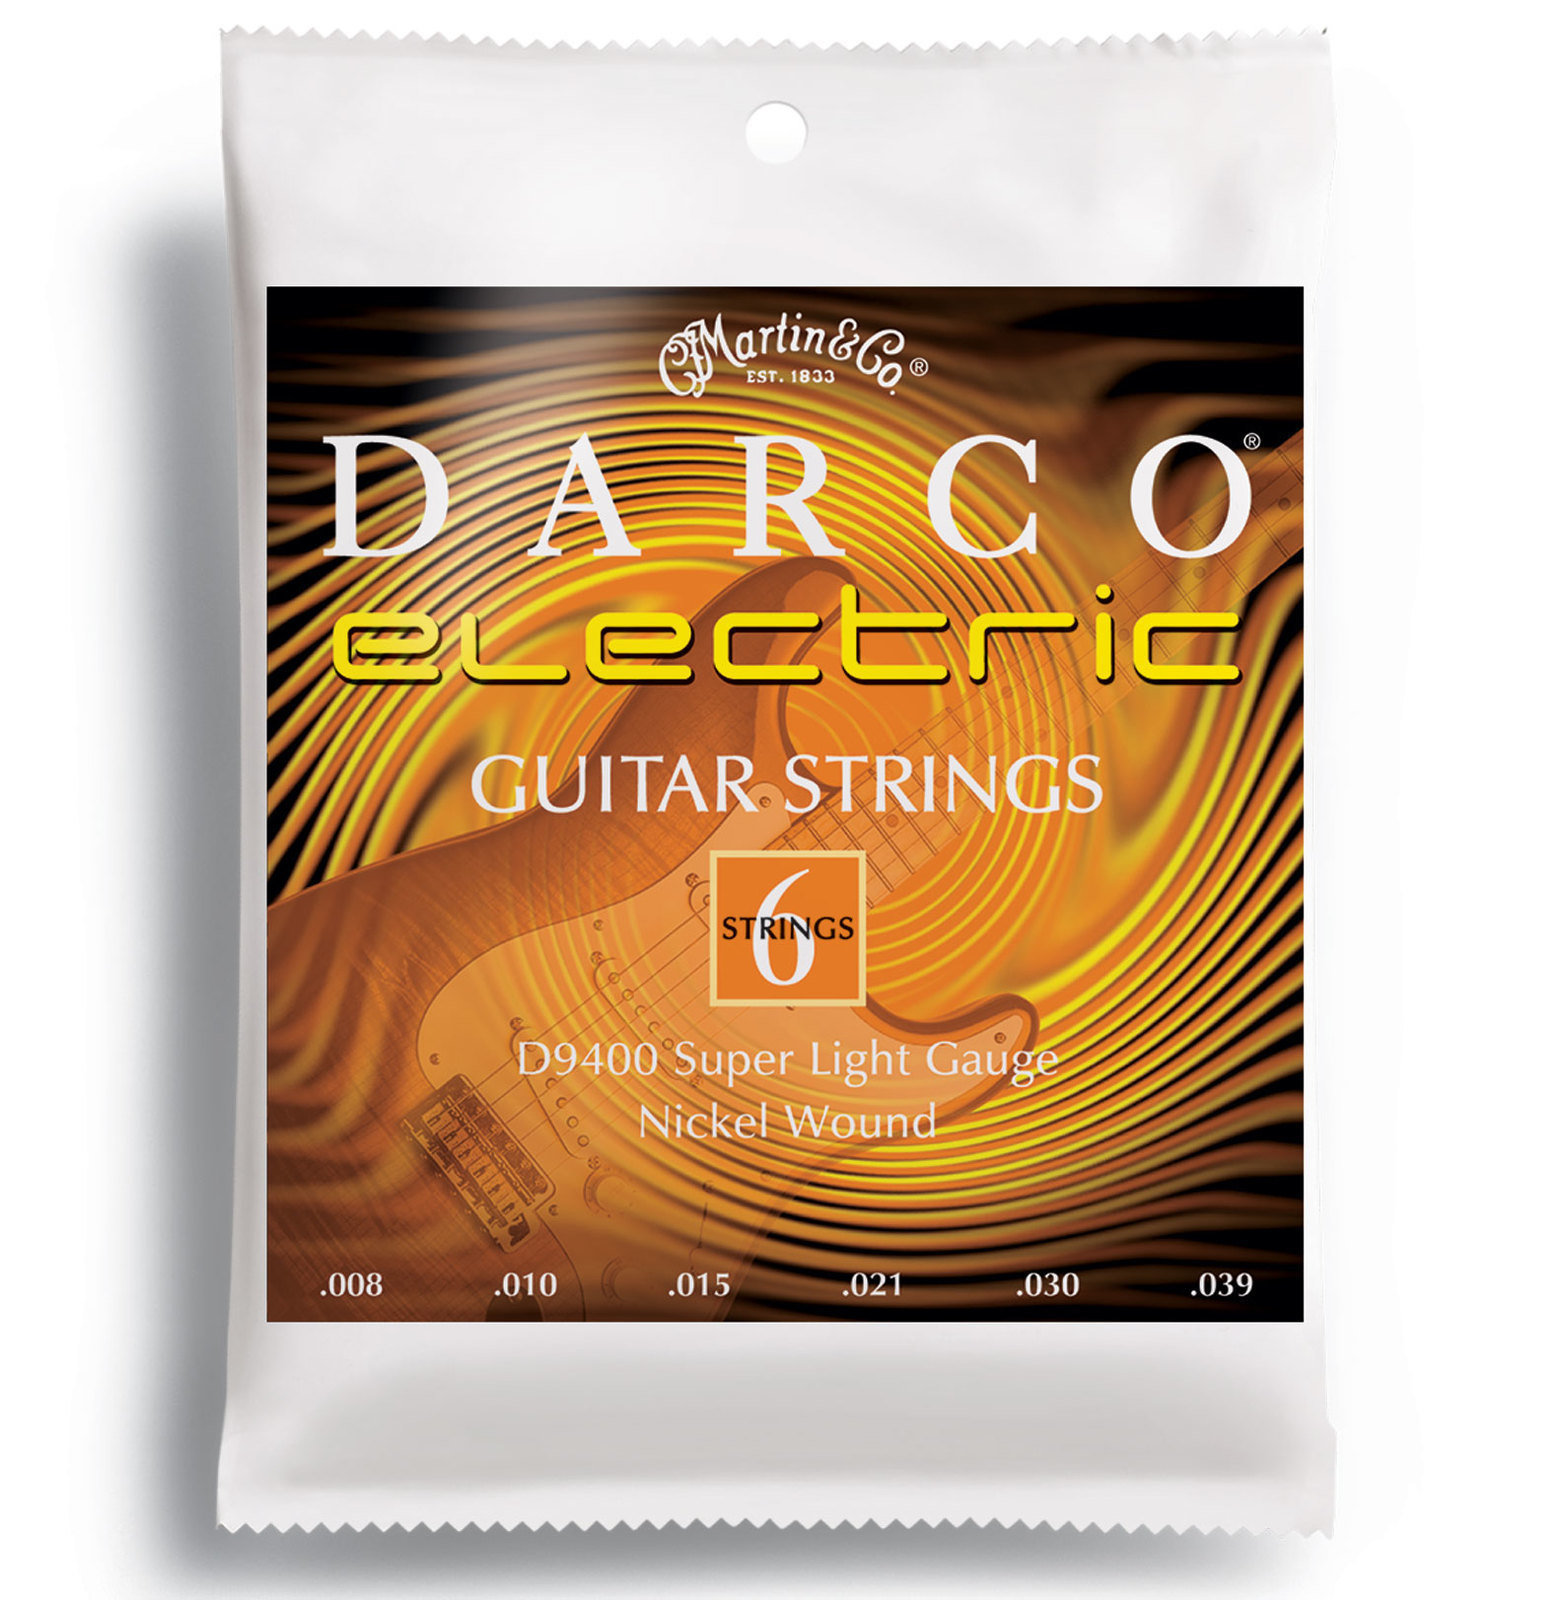 Χορδές για Ηλεκτρική Κιθάρα Martin D9400 Darco Electric Guitar Strings, Super Light